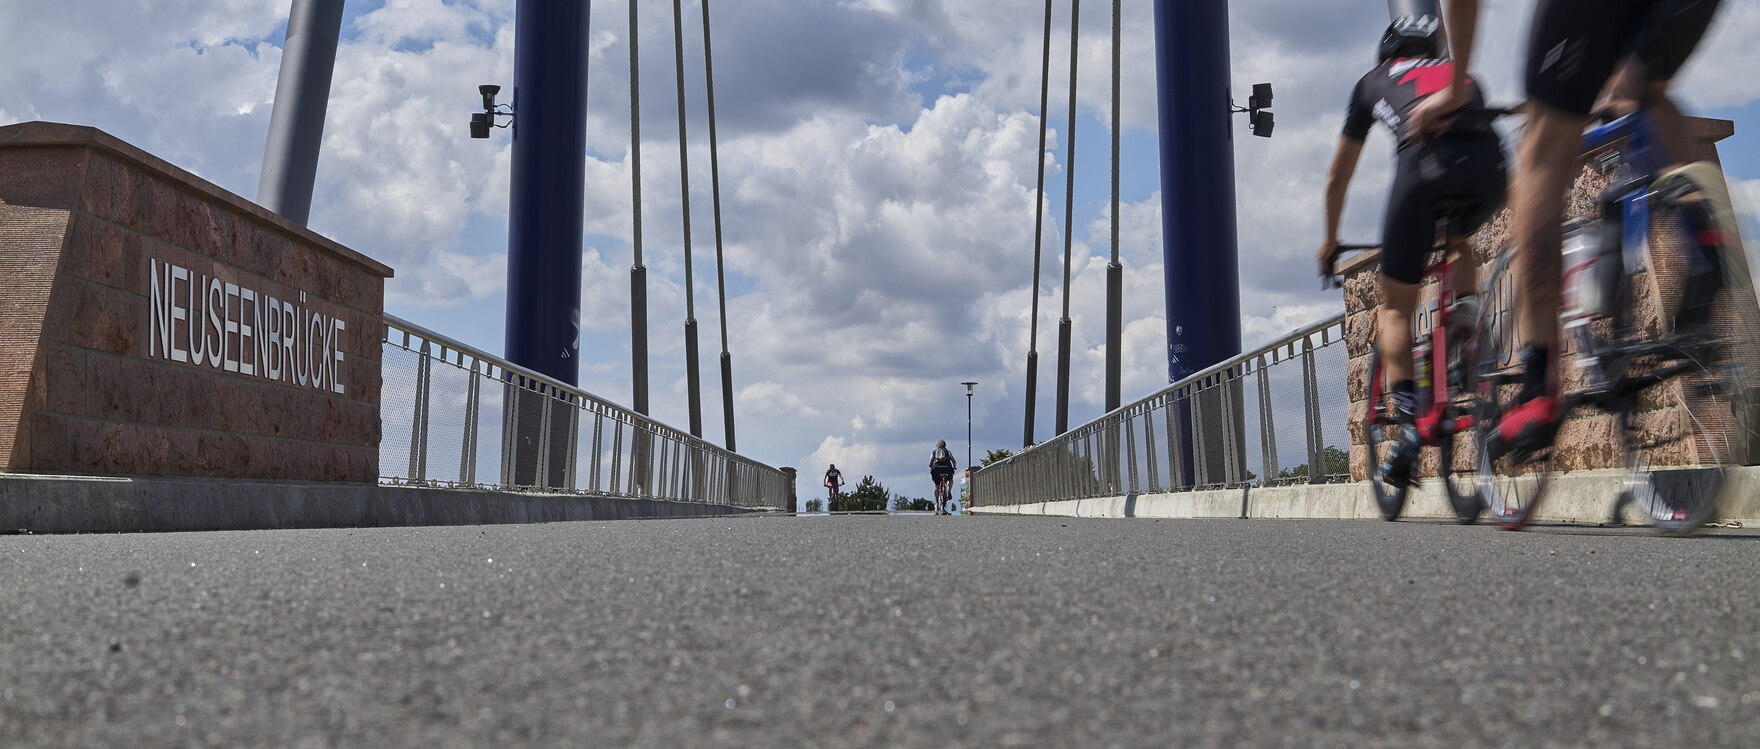 Radfahrer auf der Neuseenbrücke südlich von Leipzig